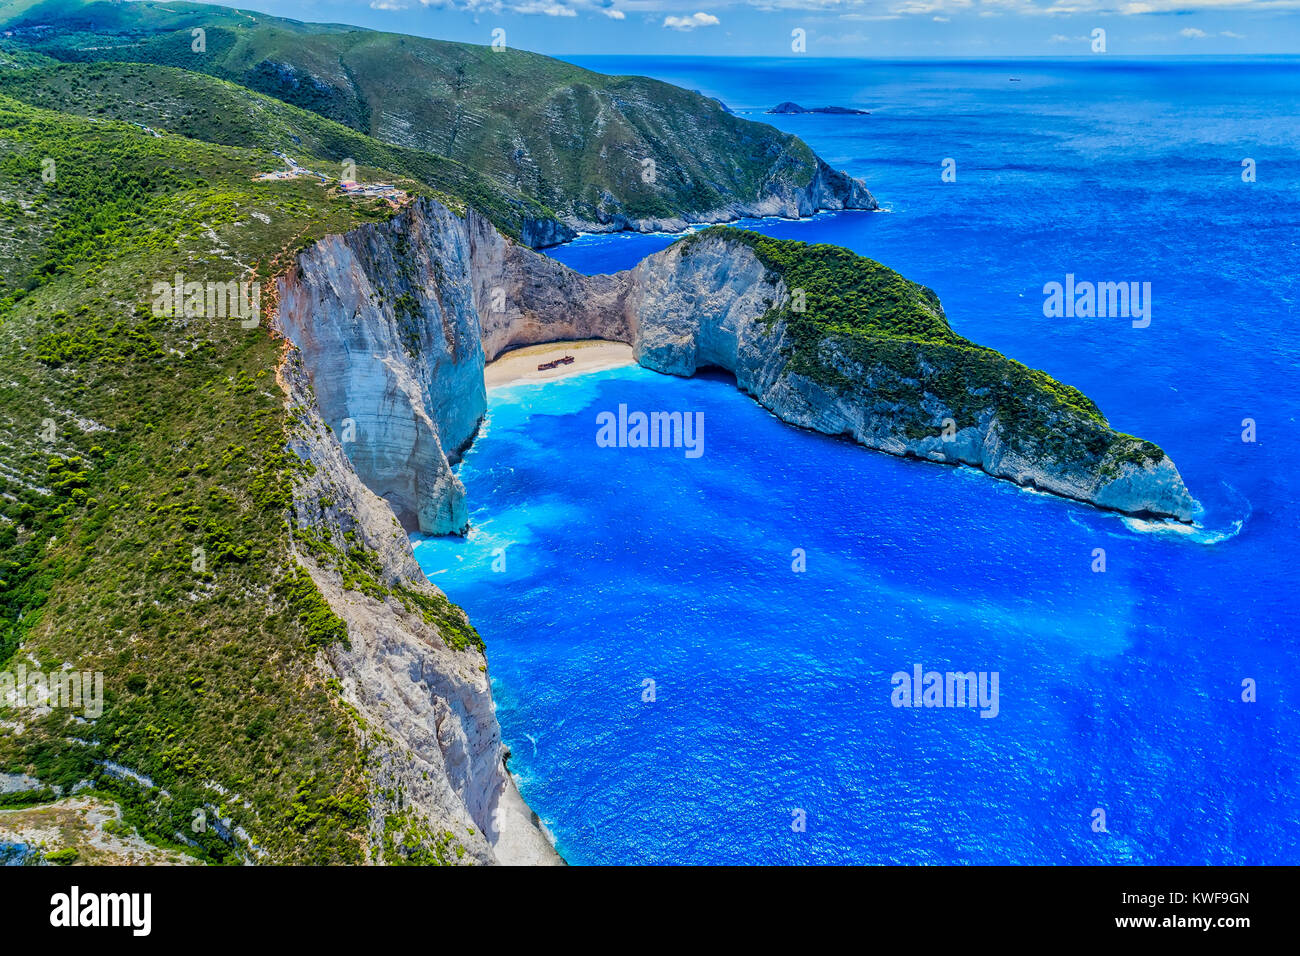 Vue aérienne de la plage de Navagio (naufrage) dans l'île de Zakynthos, Grèce. Plage de Navagio est une attraction populaire parmi les touristes visitant l'île de Zaky Banque D'Images